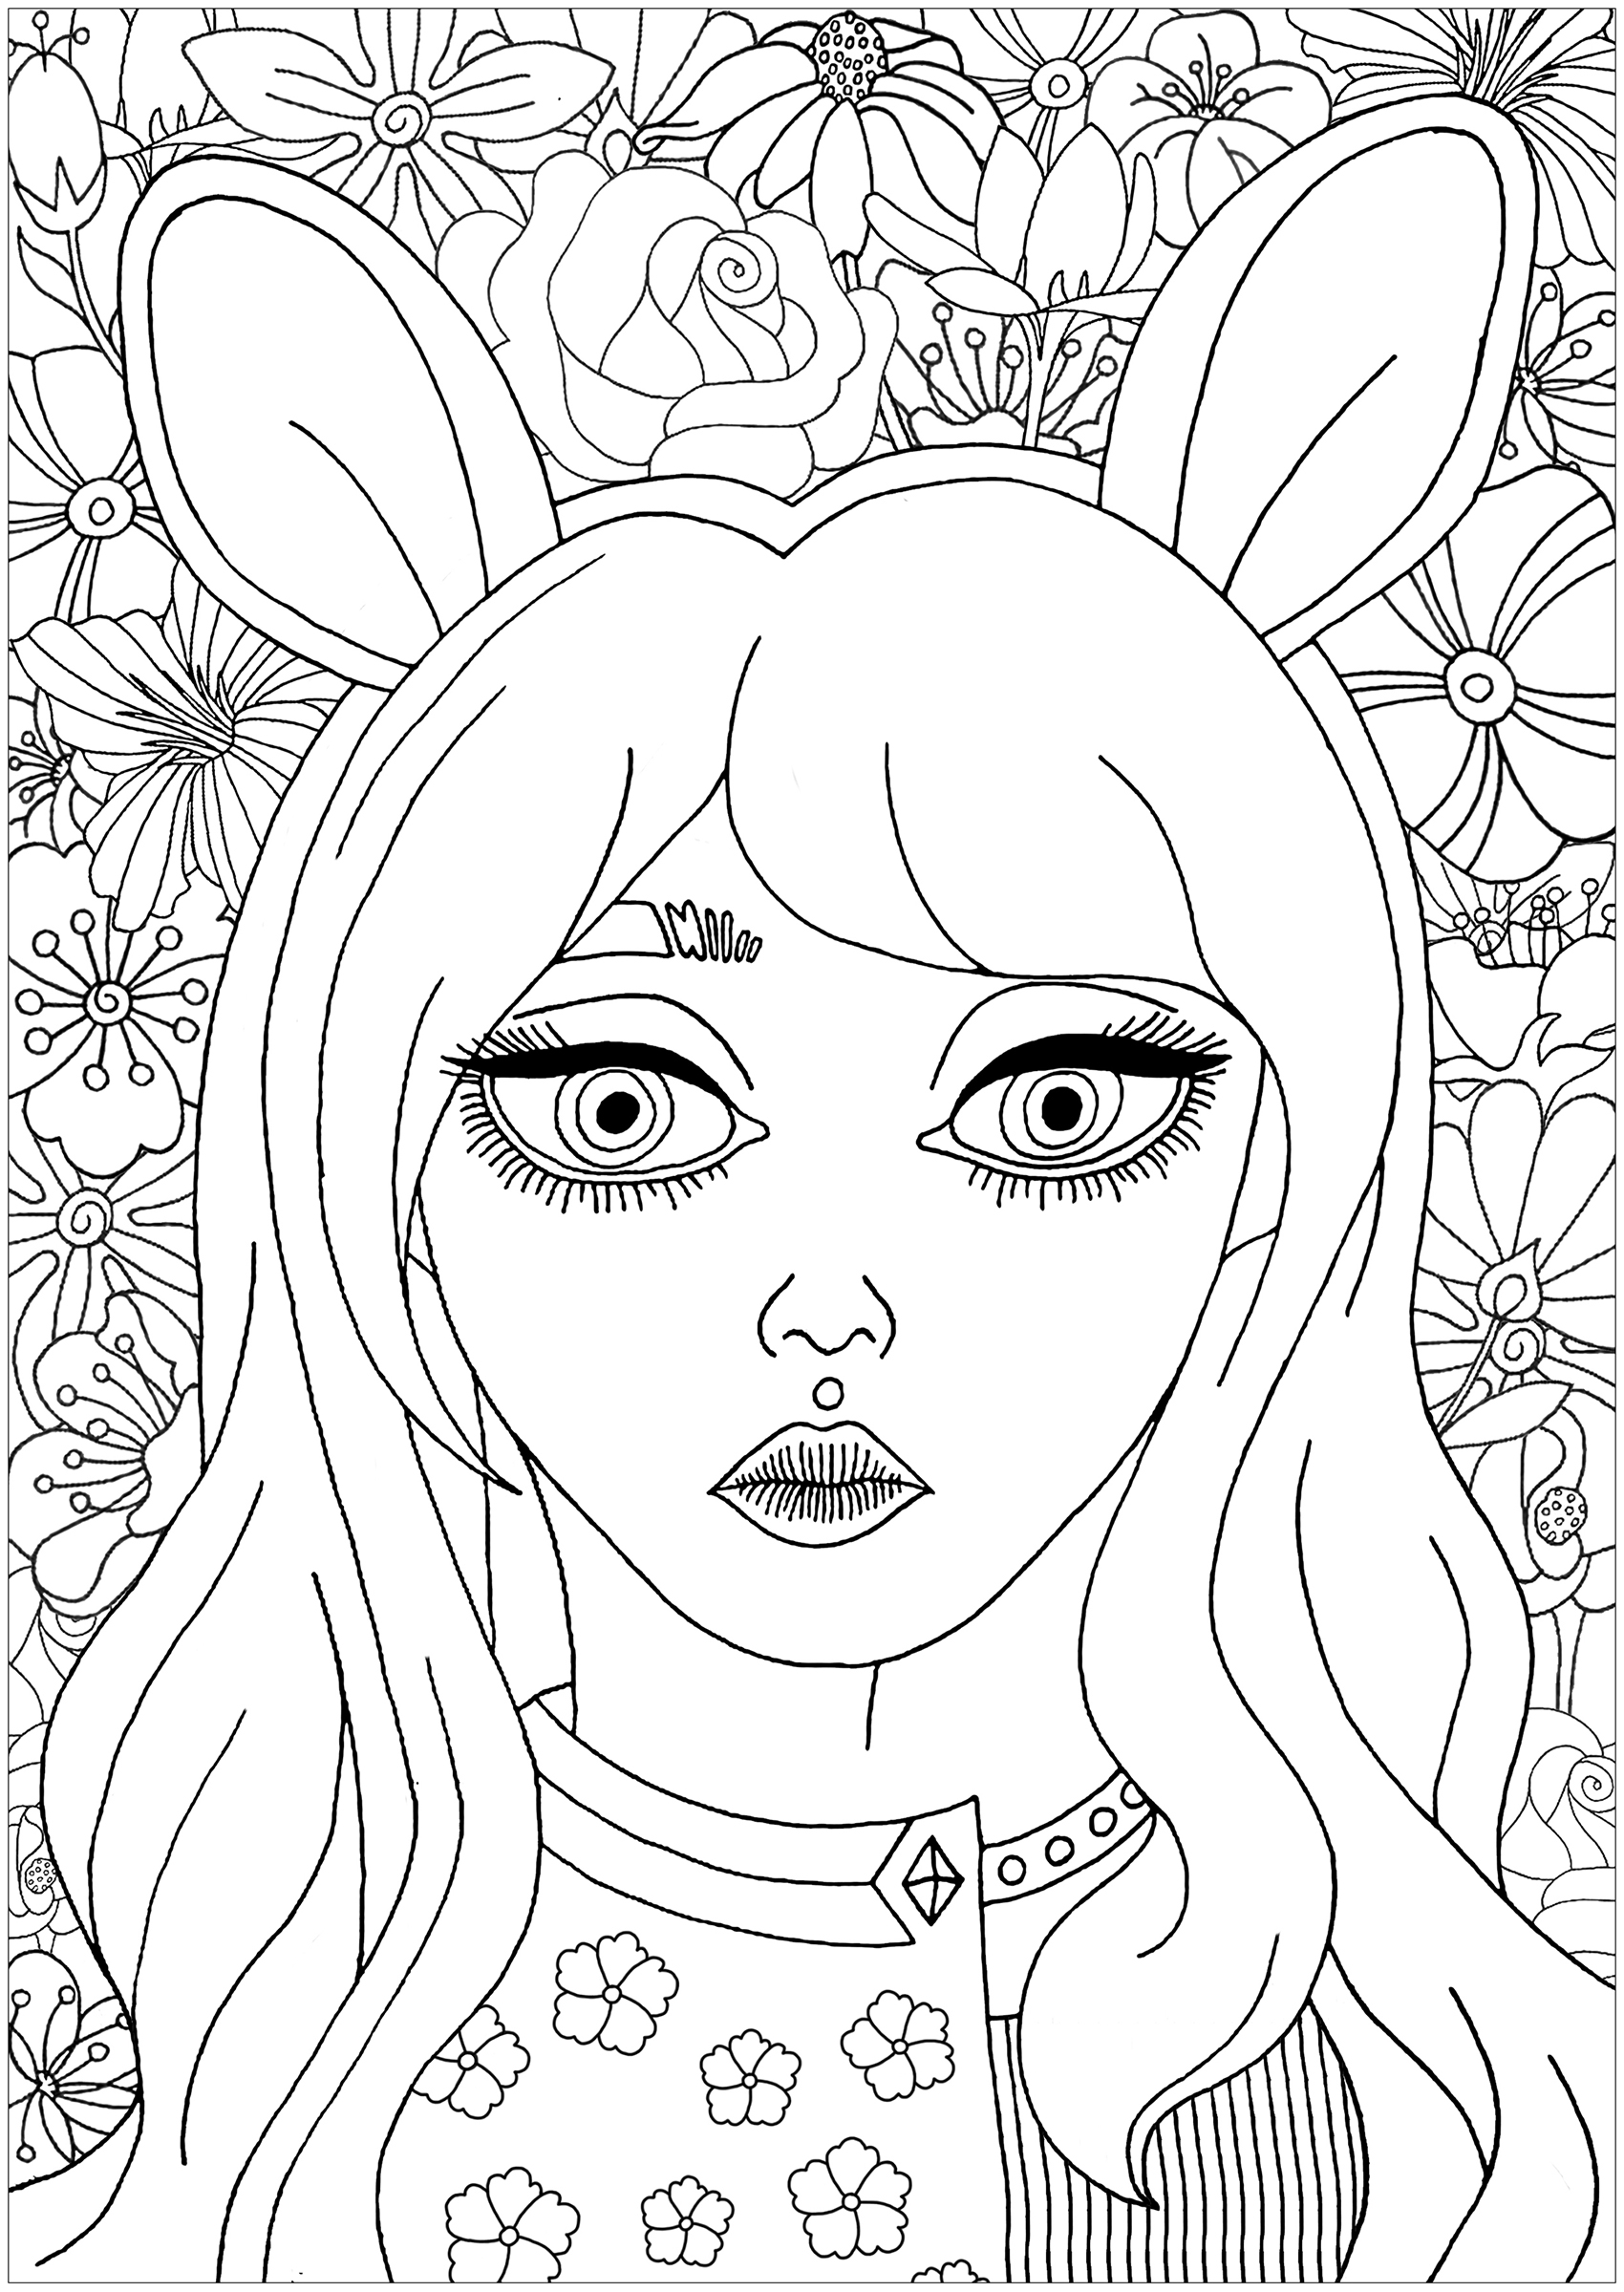 Ritratto carino di una ragazza con le orecchie da coniglio, con bellissimi fiori da colorare sullo sfondo